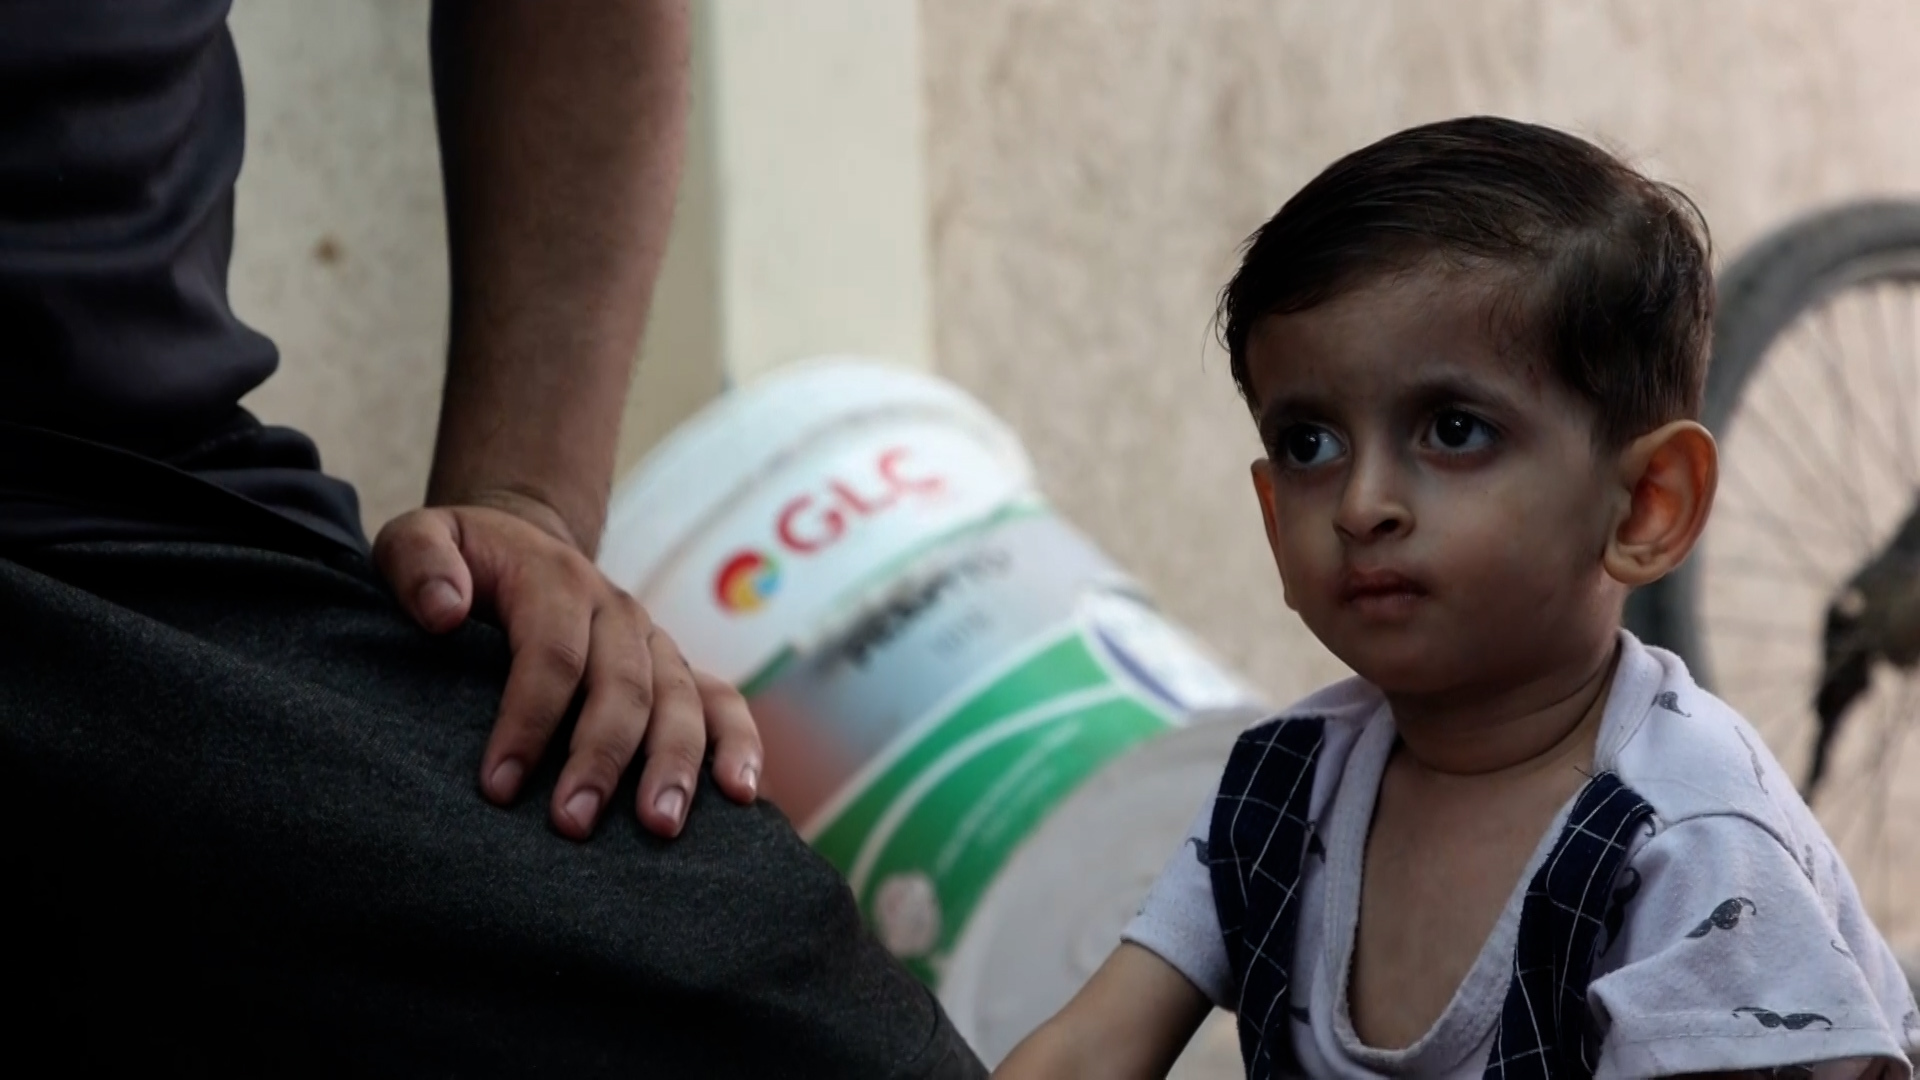 فلسطيني يروي معاناة طفليه بعد إحكام إسرائيل حصارها على غزة | التقارير الإخبارية – البوكس نيوز